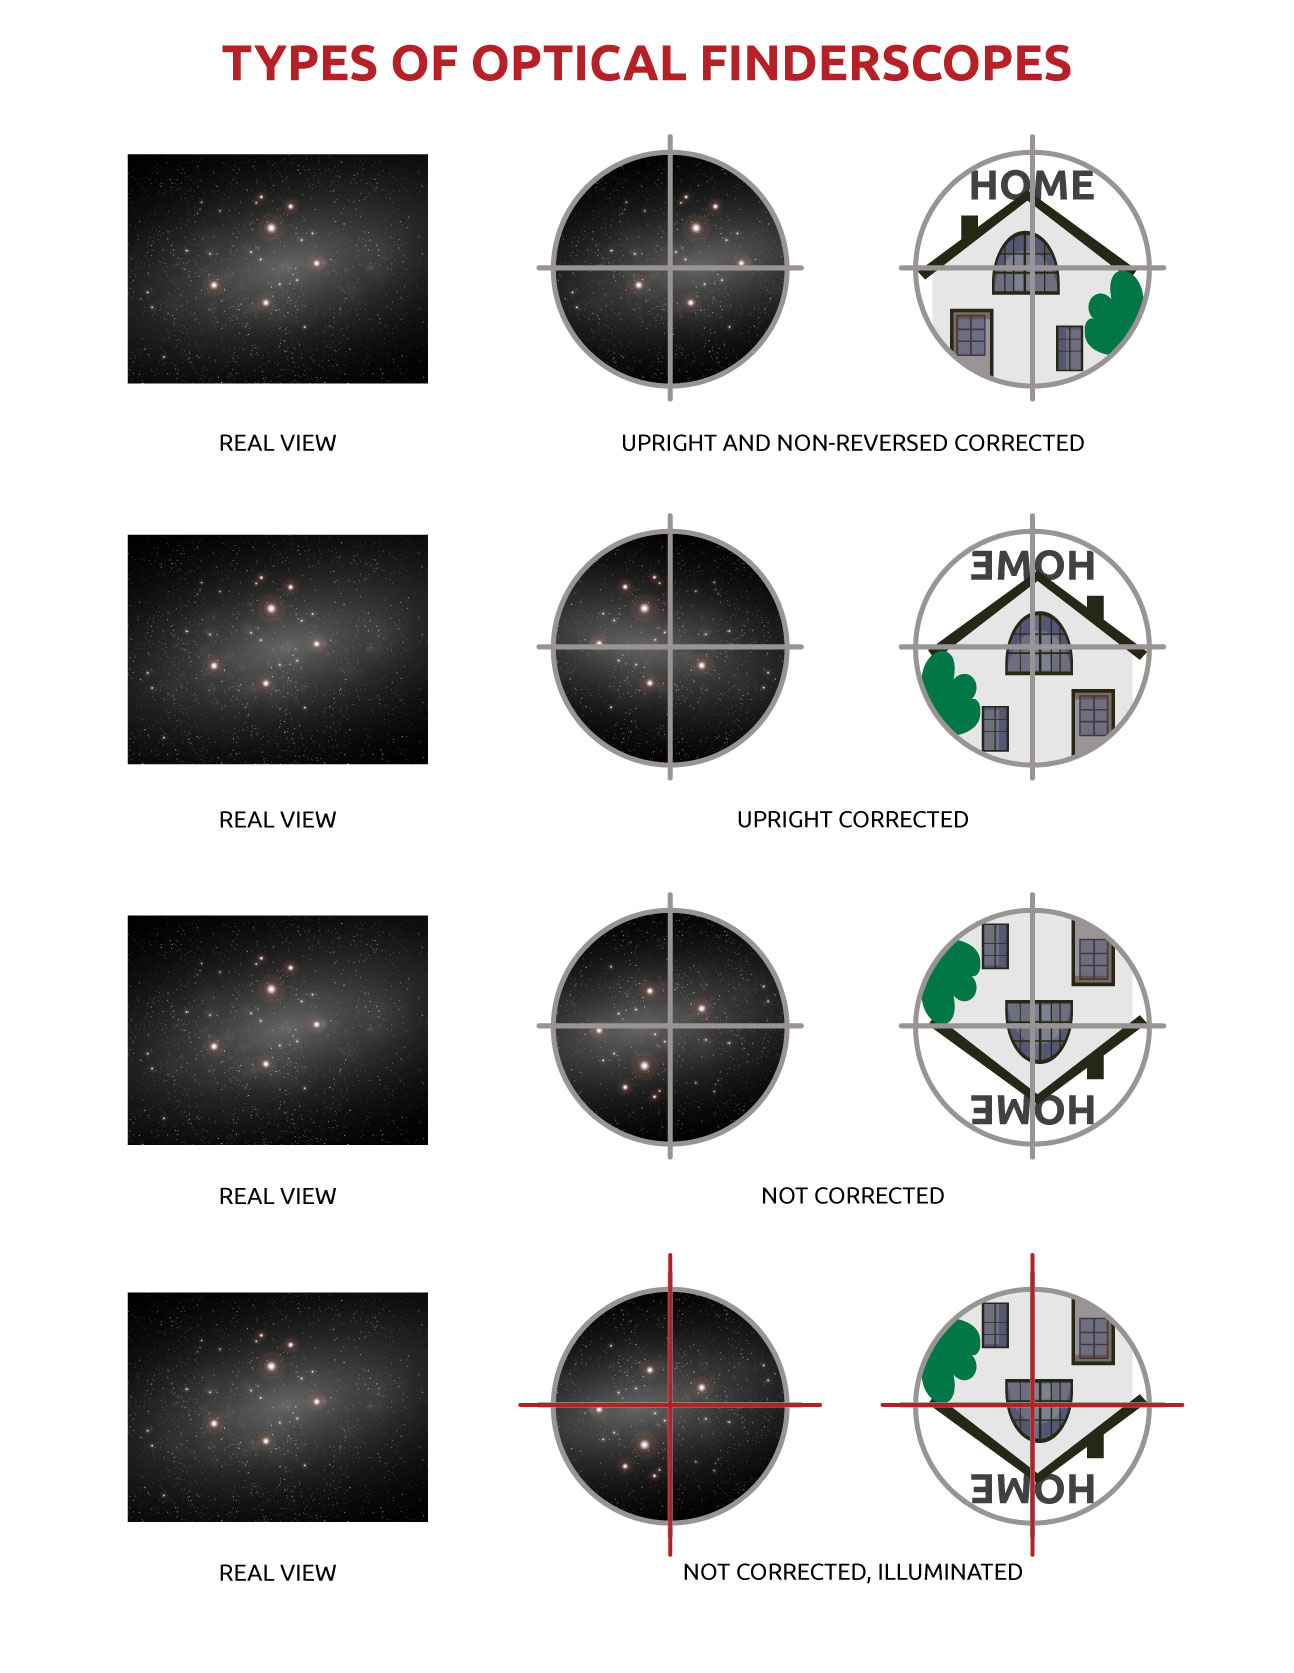 L'orientamento degli oggetti nel cercatore ottico